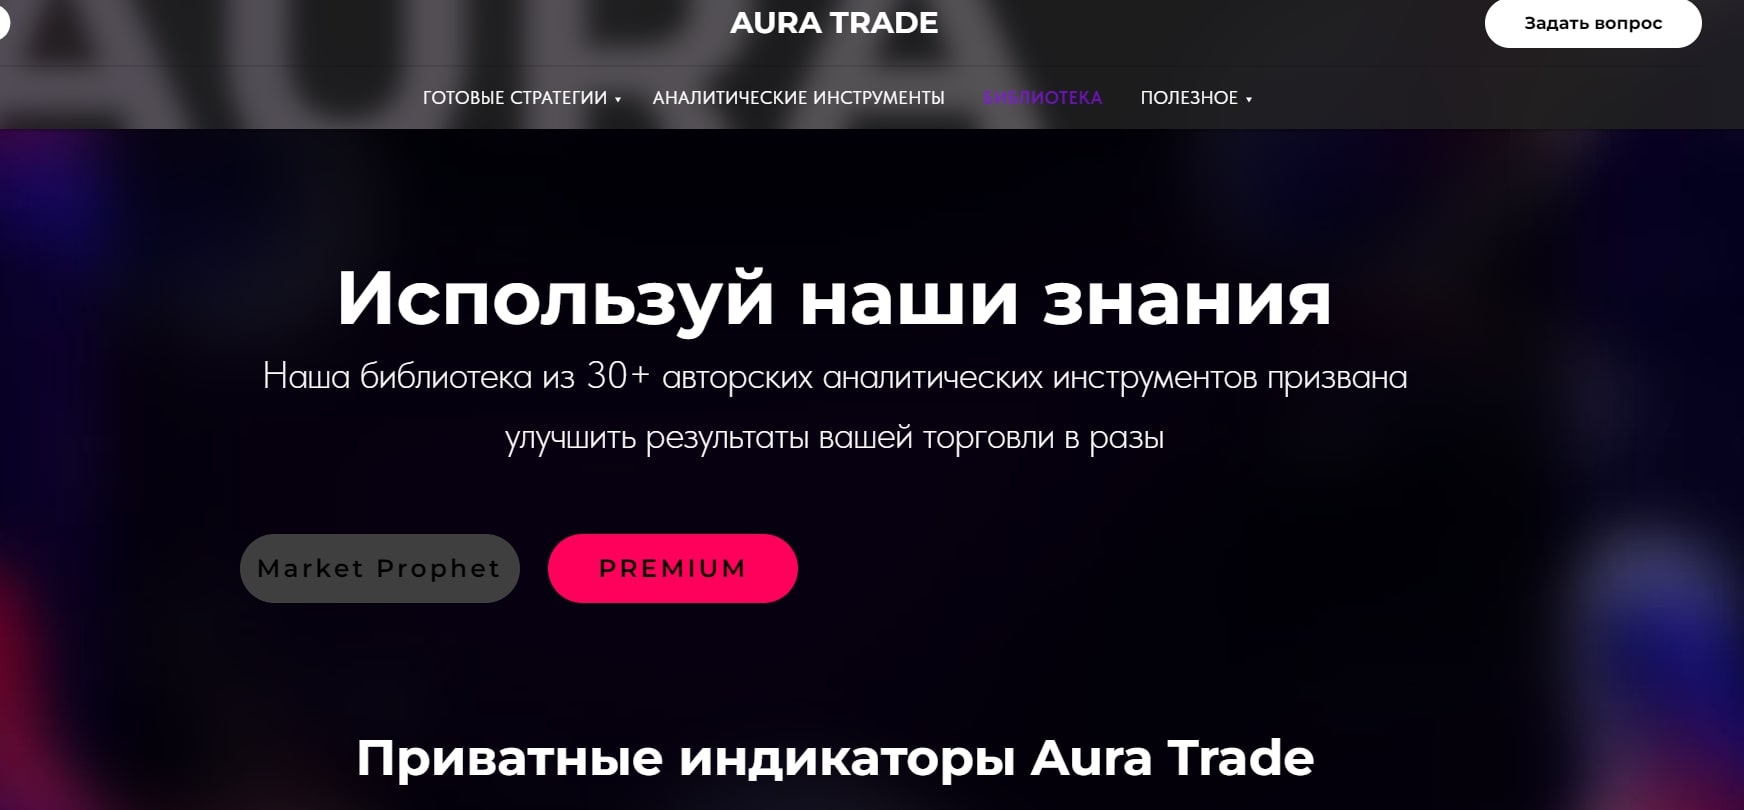 Компания Aura Trade